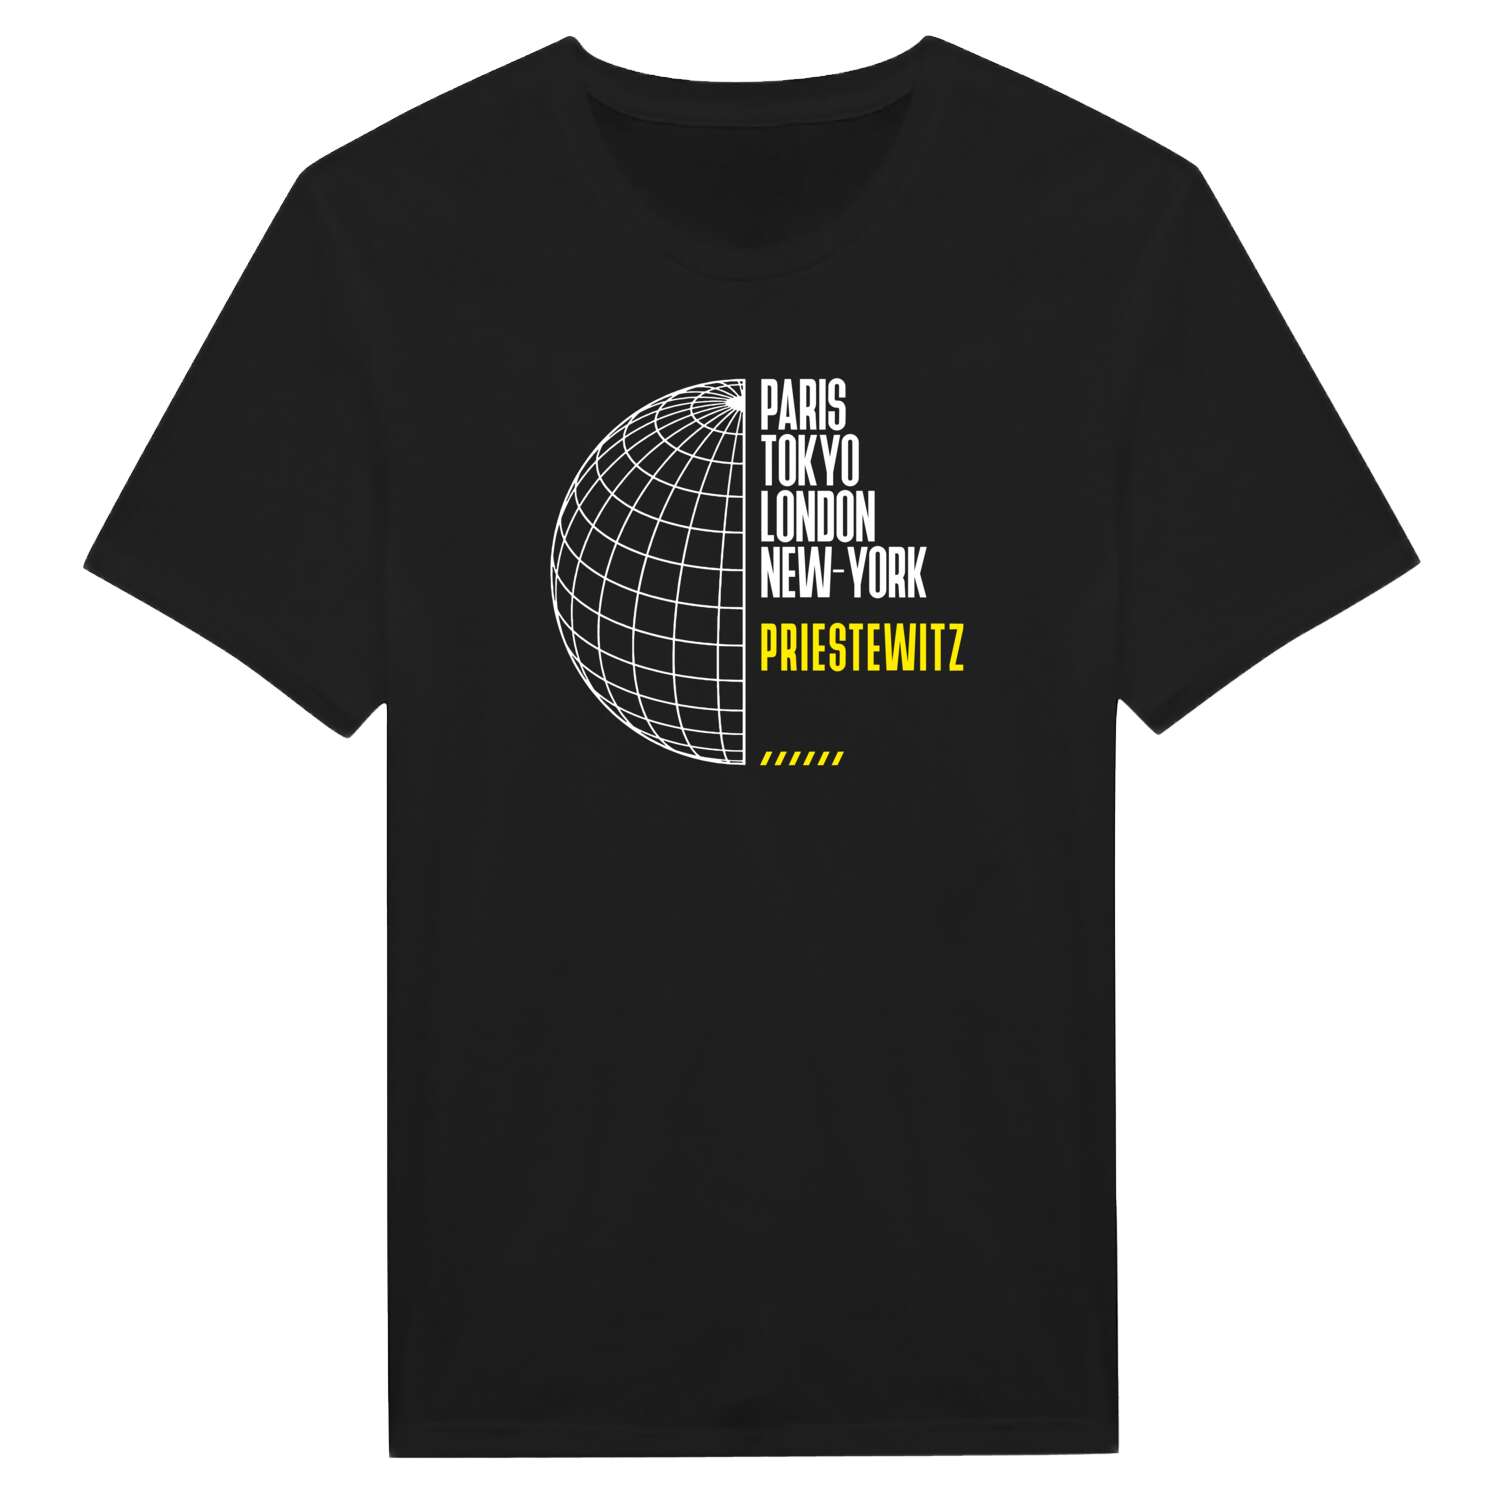 Priestewitz T-Shirt »Paris Tokyo London«